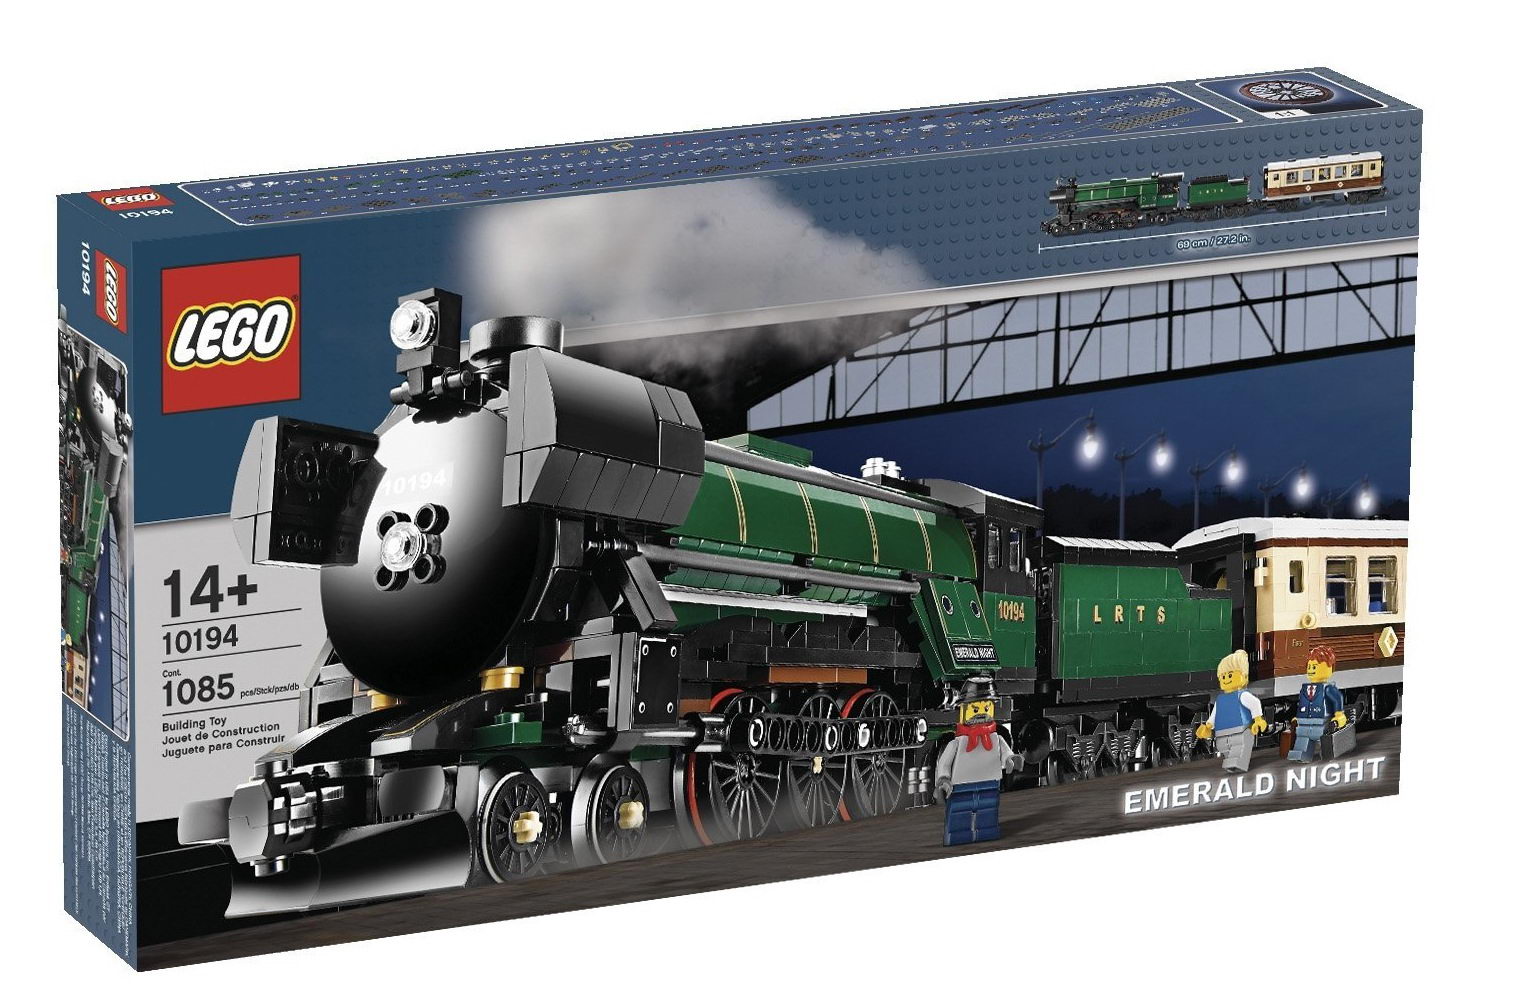 LEGO Emerald Night 10194 | Modular Brick